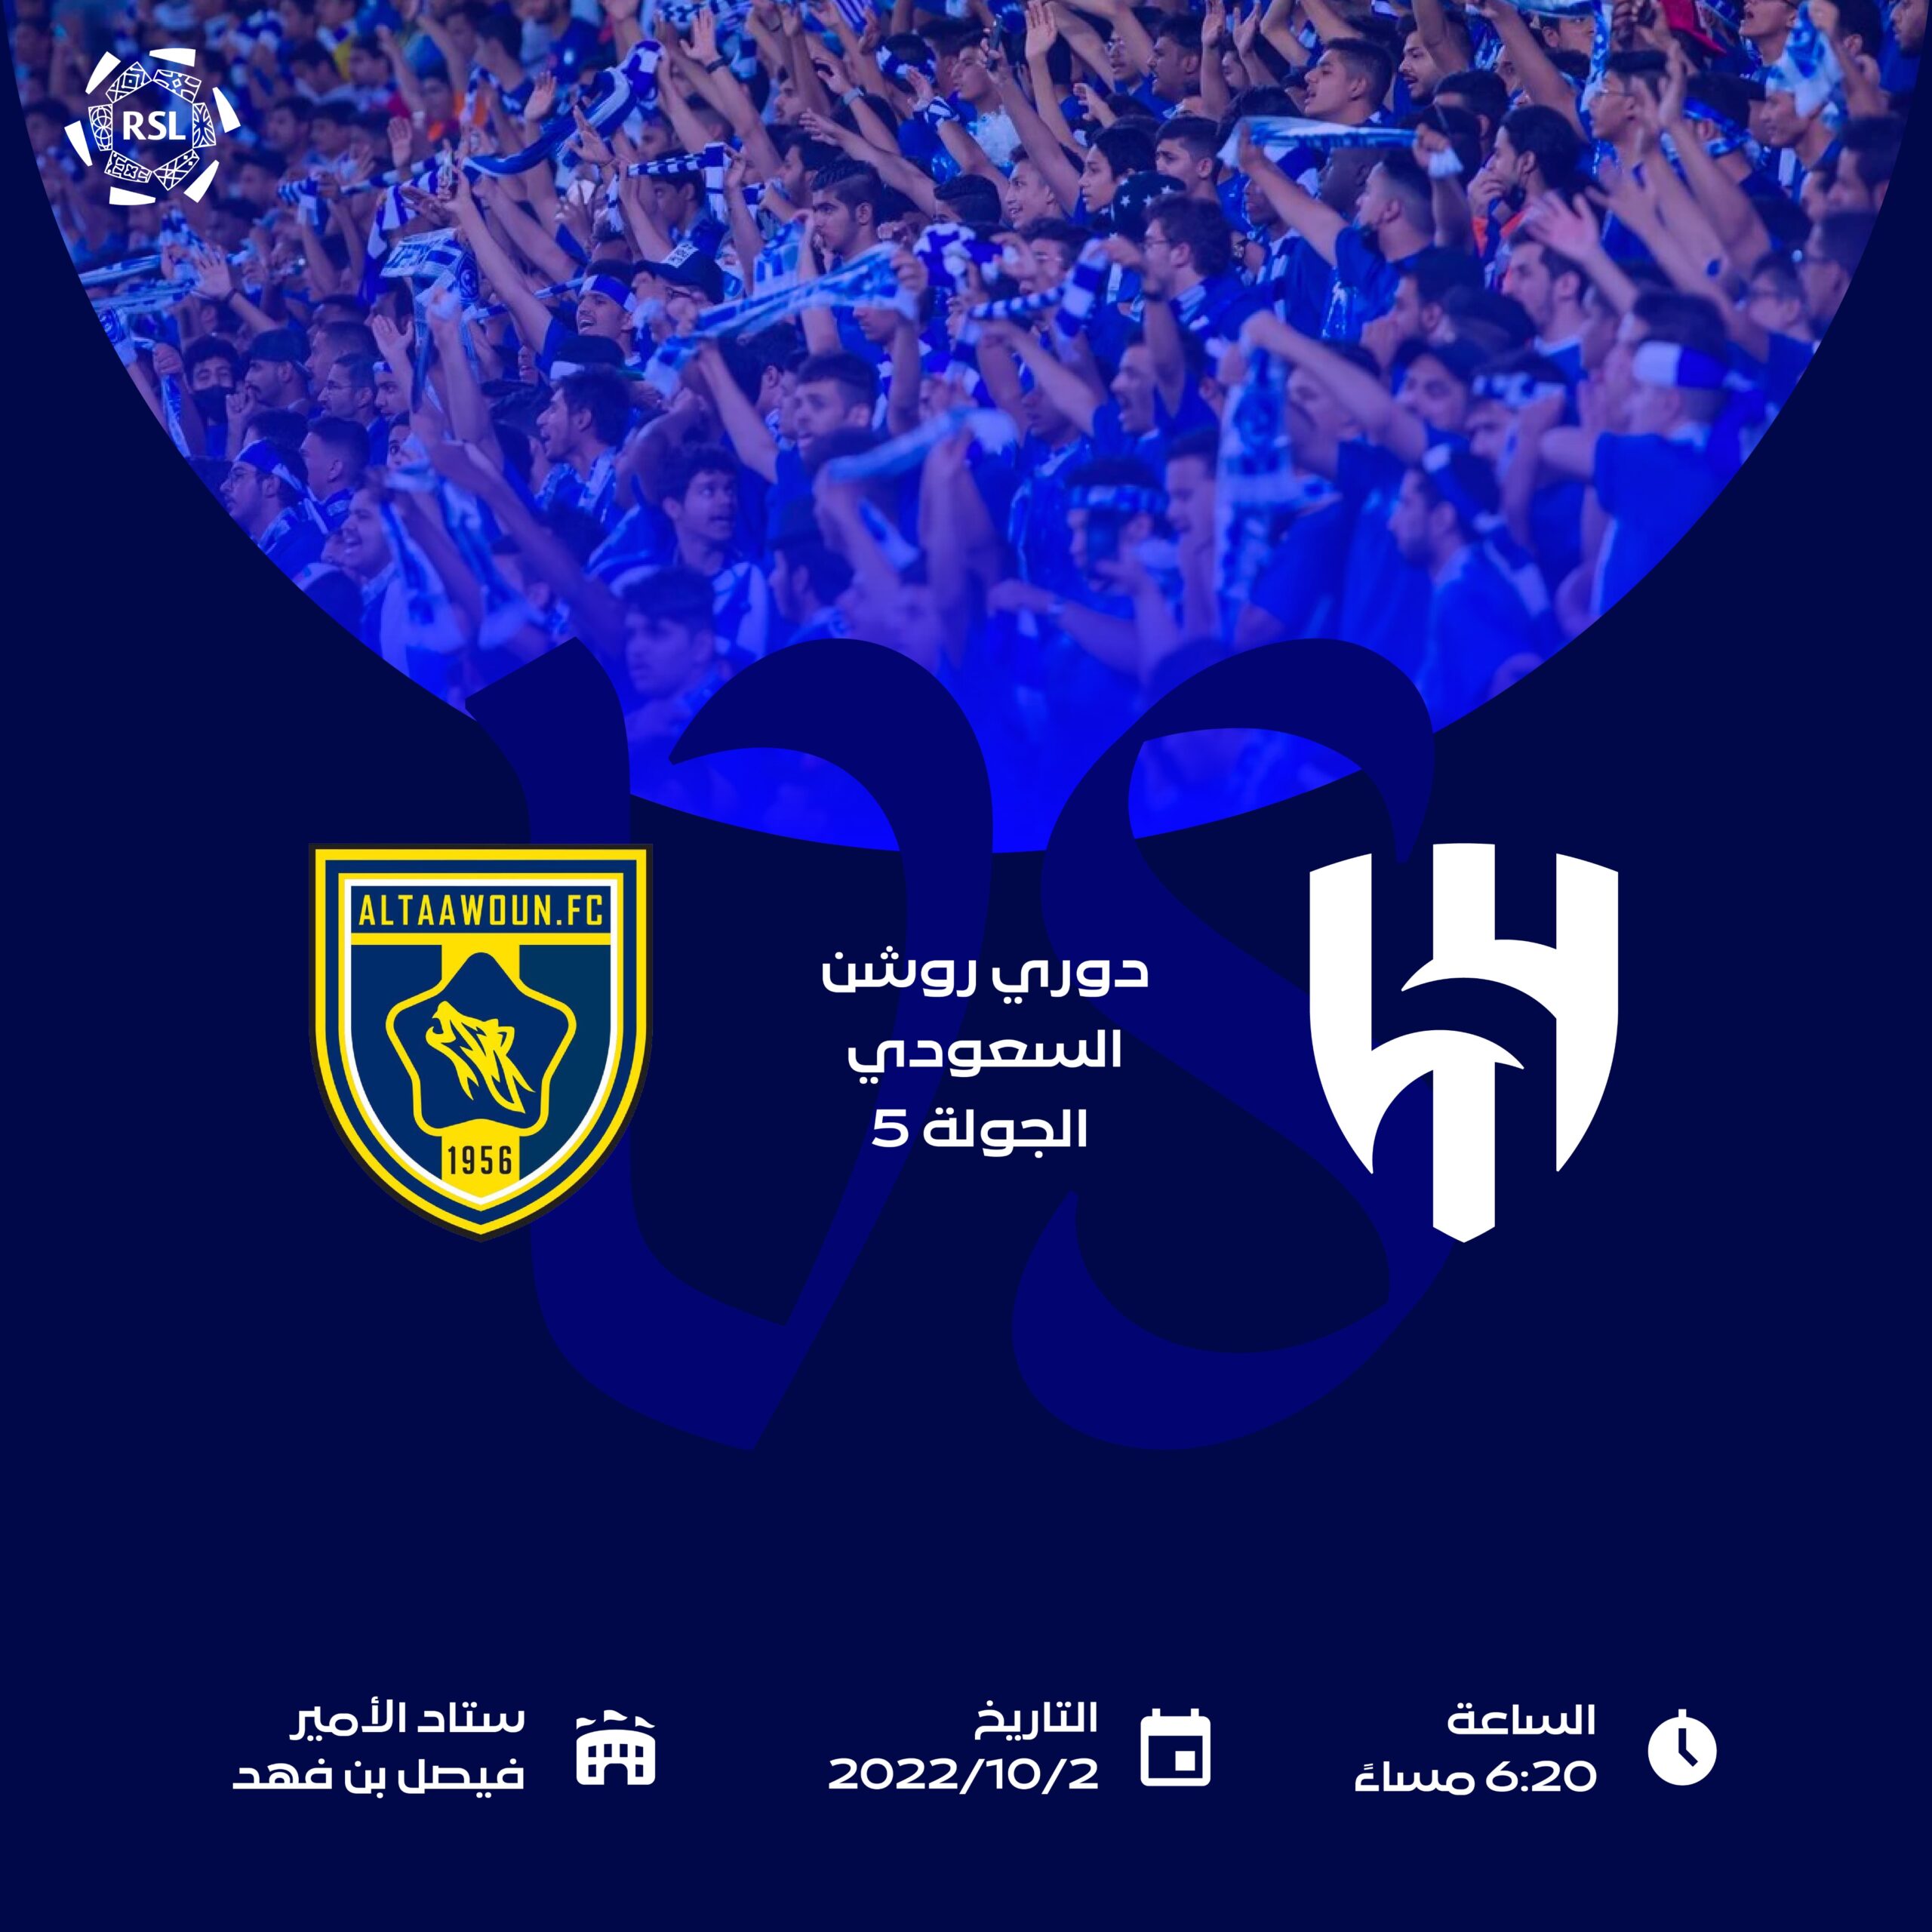 حجز تذاكر مباراة الهلال والتعاون اليوم في الجولة 5 من الدوري السعودي 2022  شراء alhilal.com